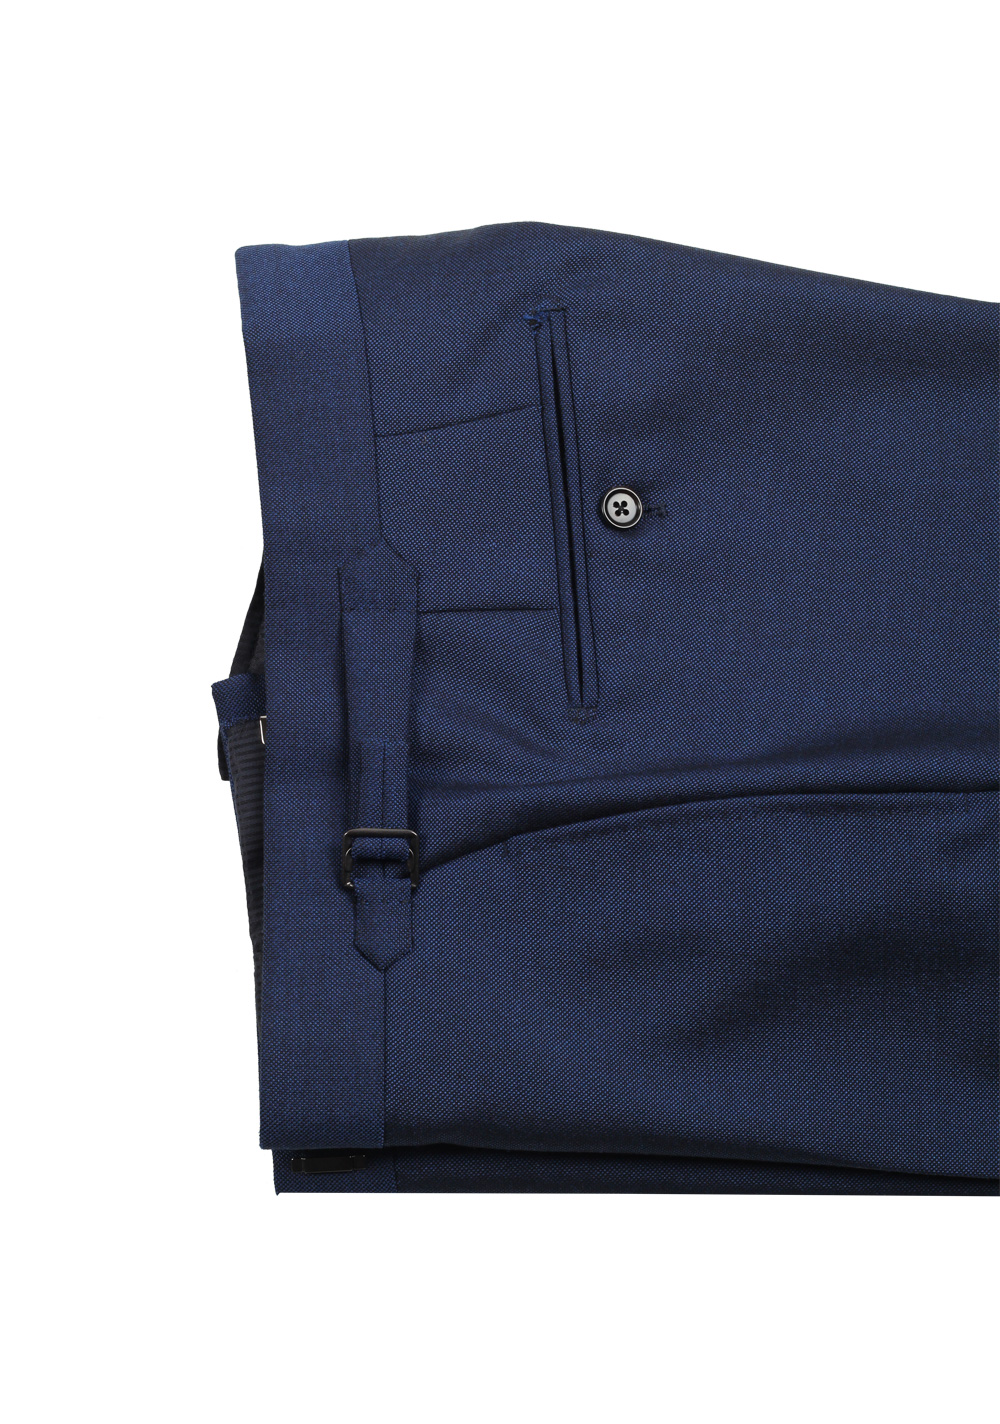 TOM FORD Windsor Blue Suit Size 48C / 38S U.S. Fit A | Costume Limité